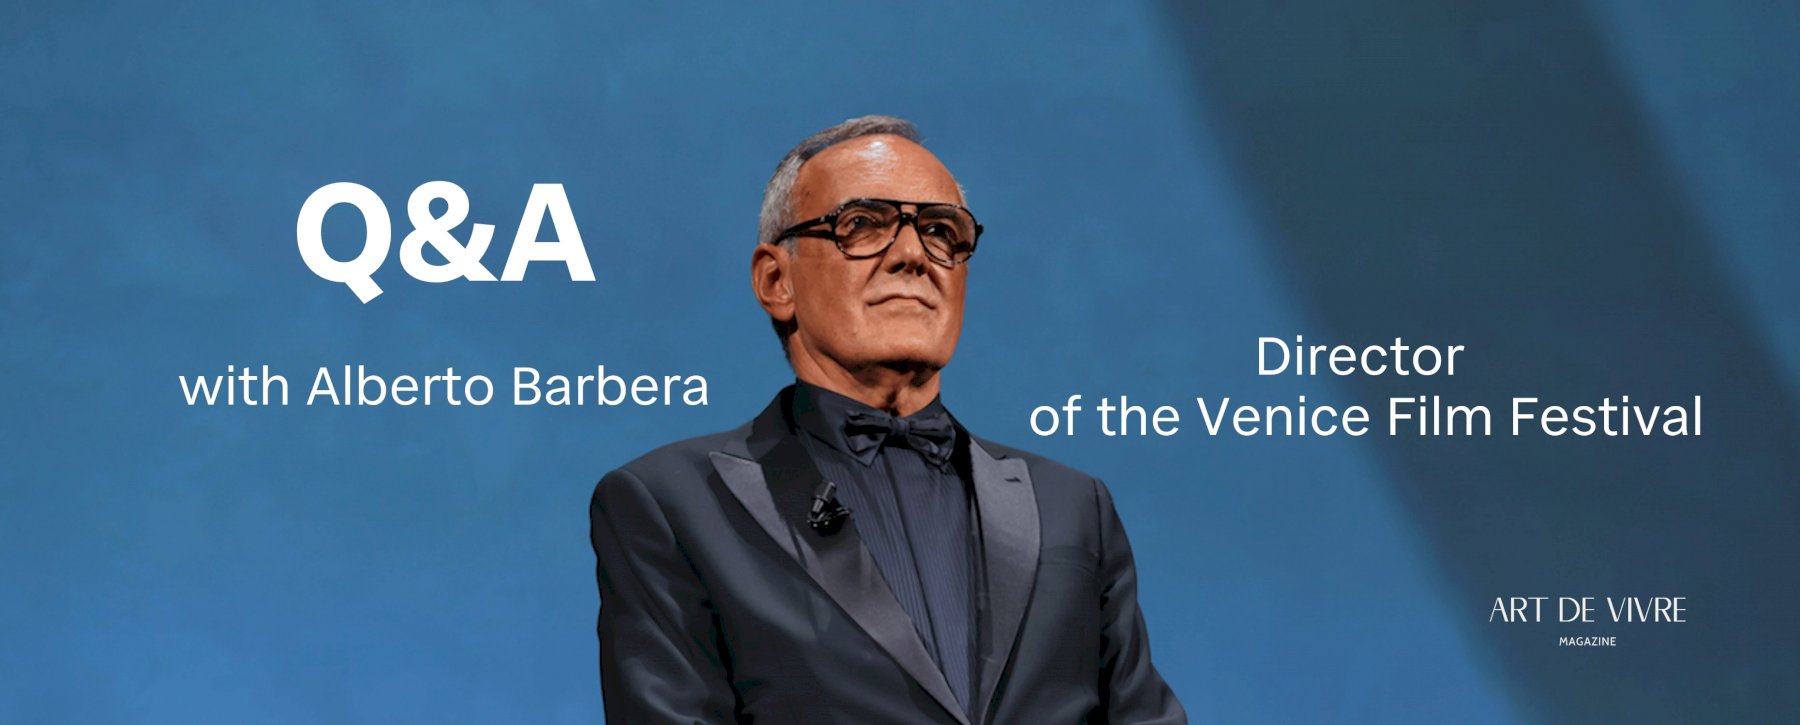 Q&A with Alberto Barbera, Director of the Venice Film Festival